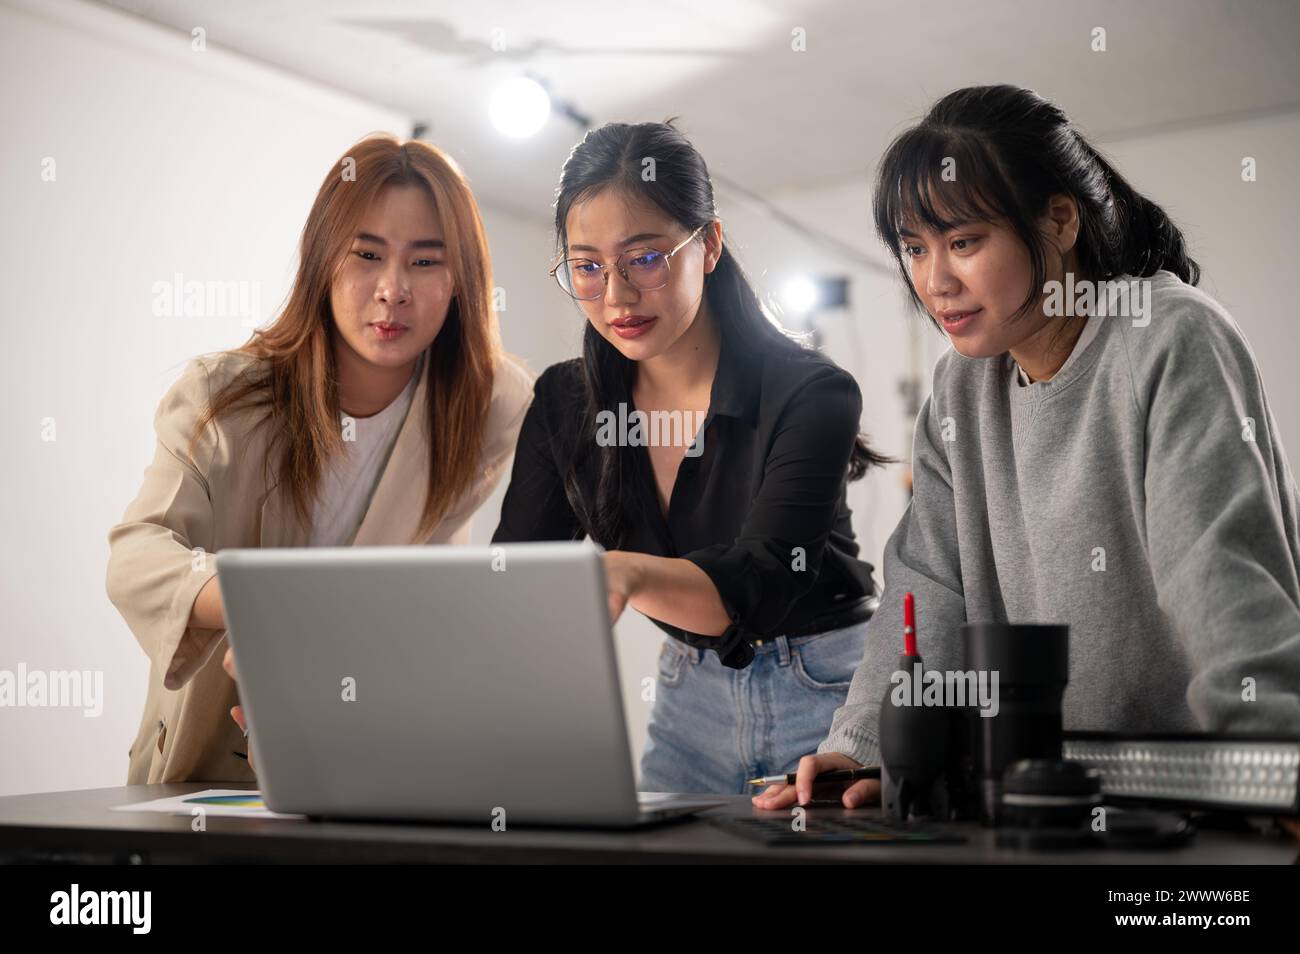 Eine erfahrene asiatische Fotografin überprüft Bilder auf ihrem Laptop, informiert das Konzept, bereitet sich auf ein Fotoshooting vor und arbeitet im Studio Stockfoto